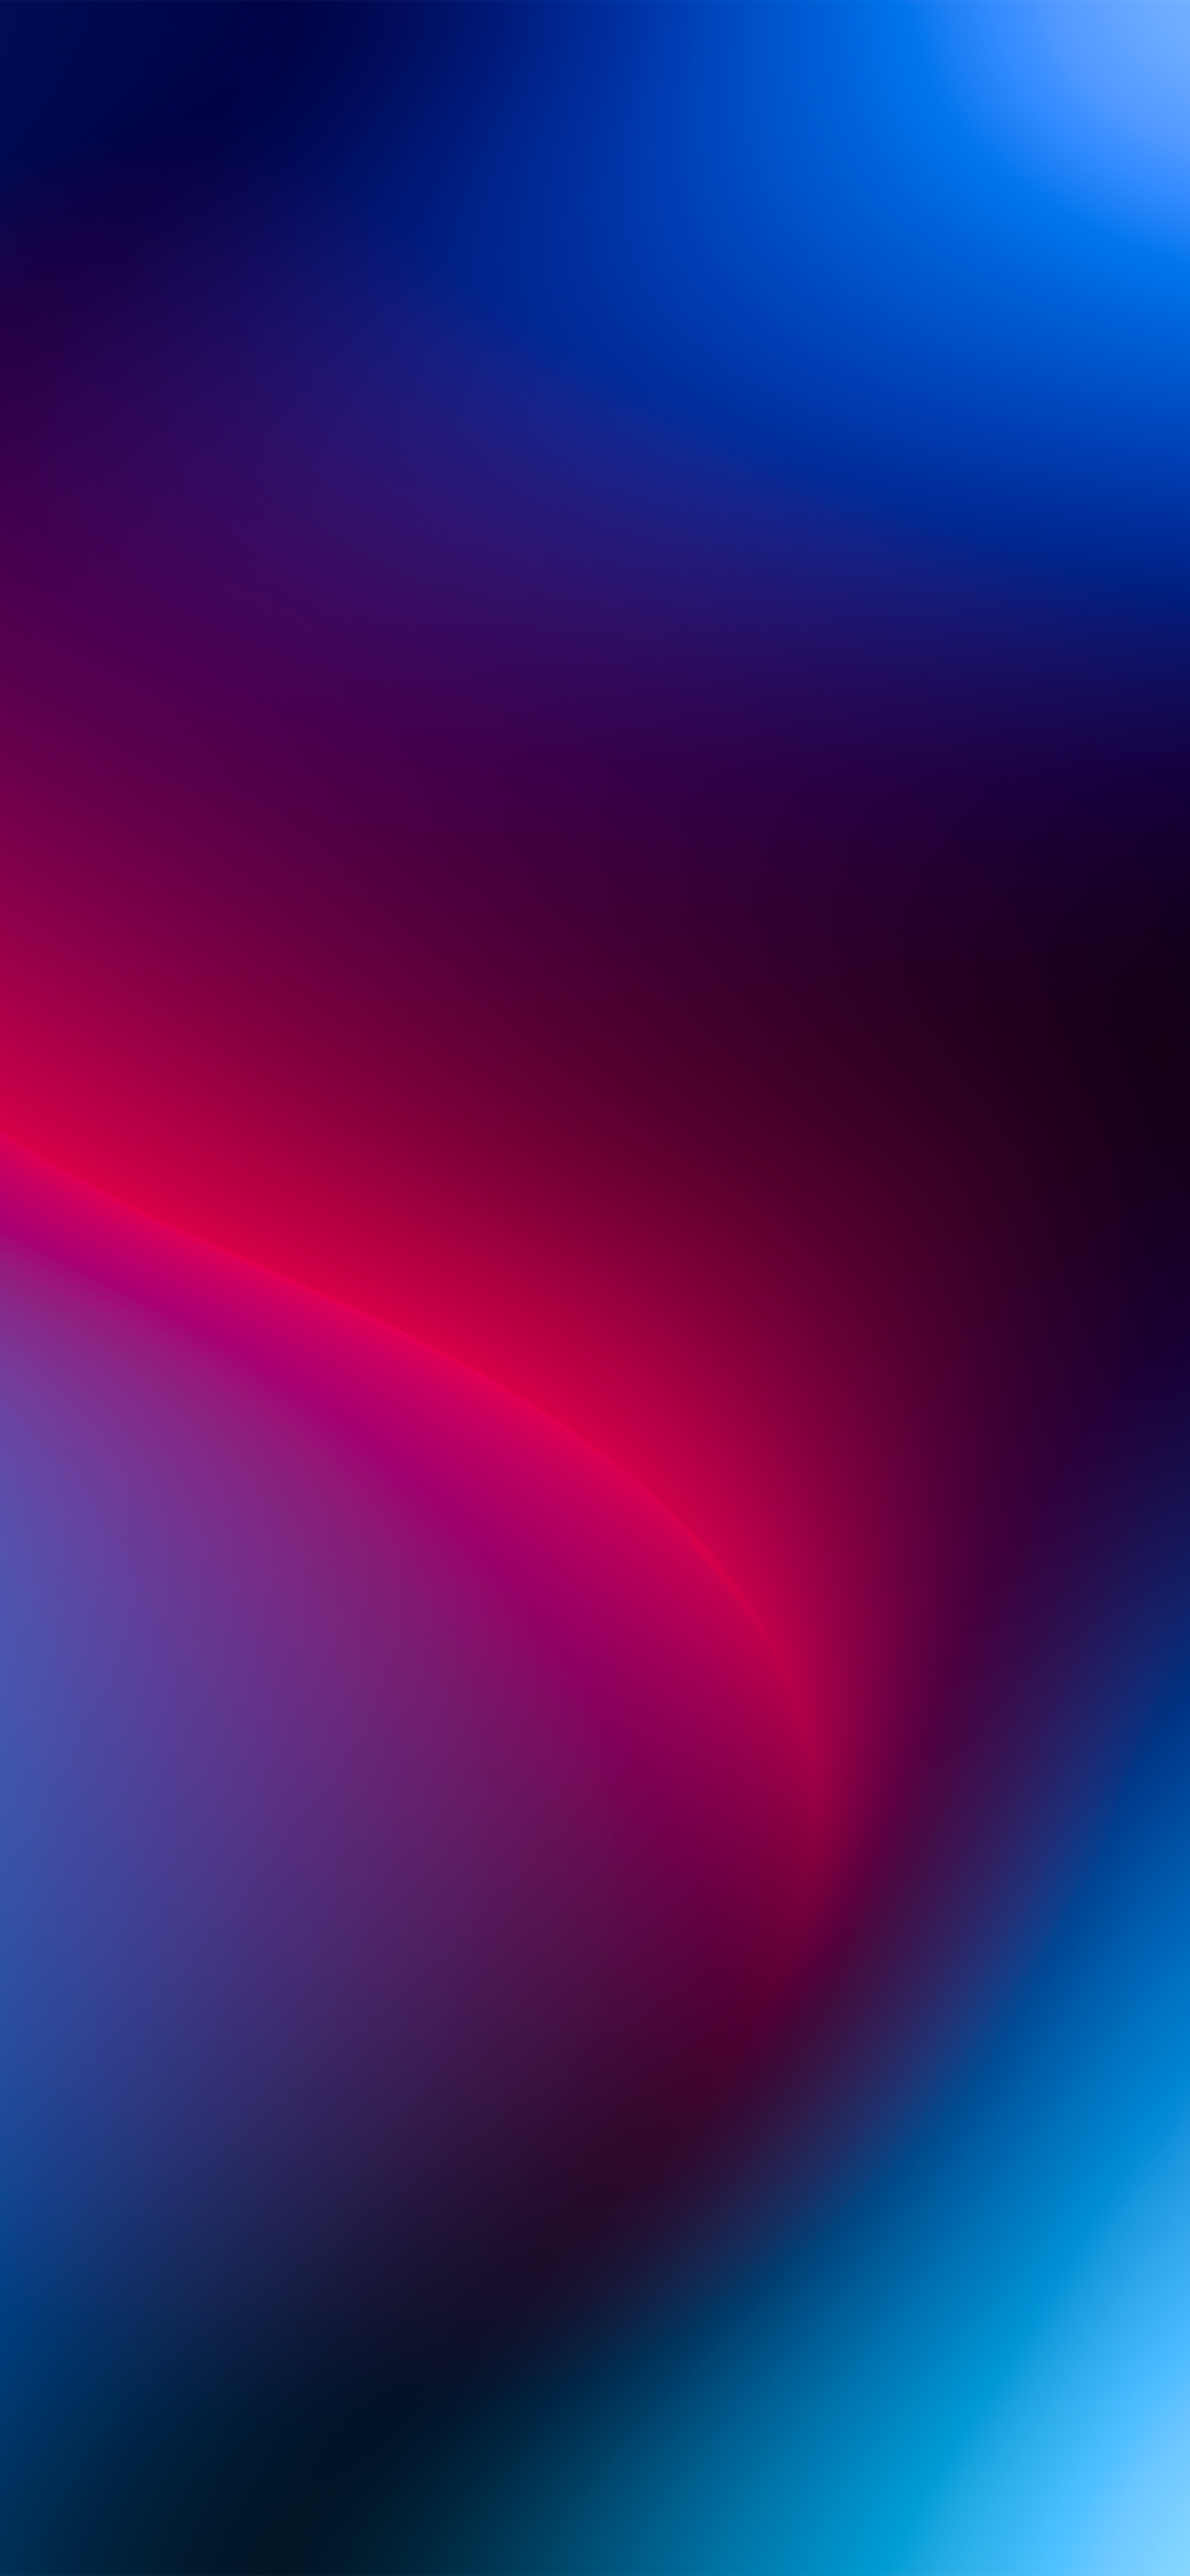 iOS 15 đã chính thức ra mắt với đổ màu gradient tối cực chất lượng. Hãy cùng ngắm nhìn hình ảnh liên quan và cảm nhận màu sắc hoàn hảo của iOS